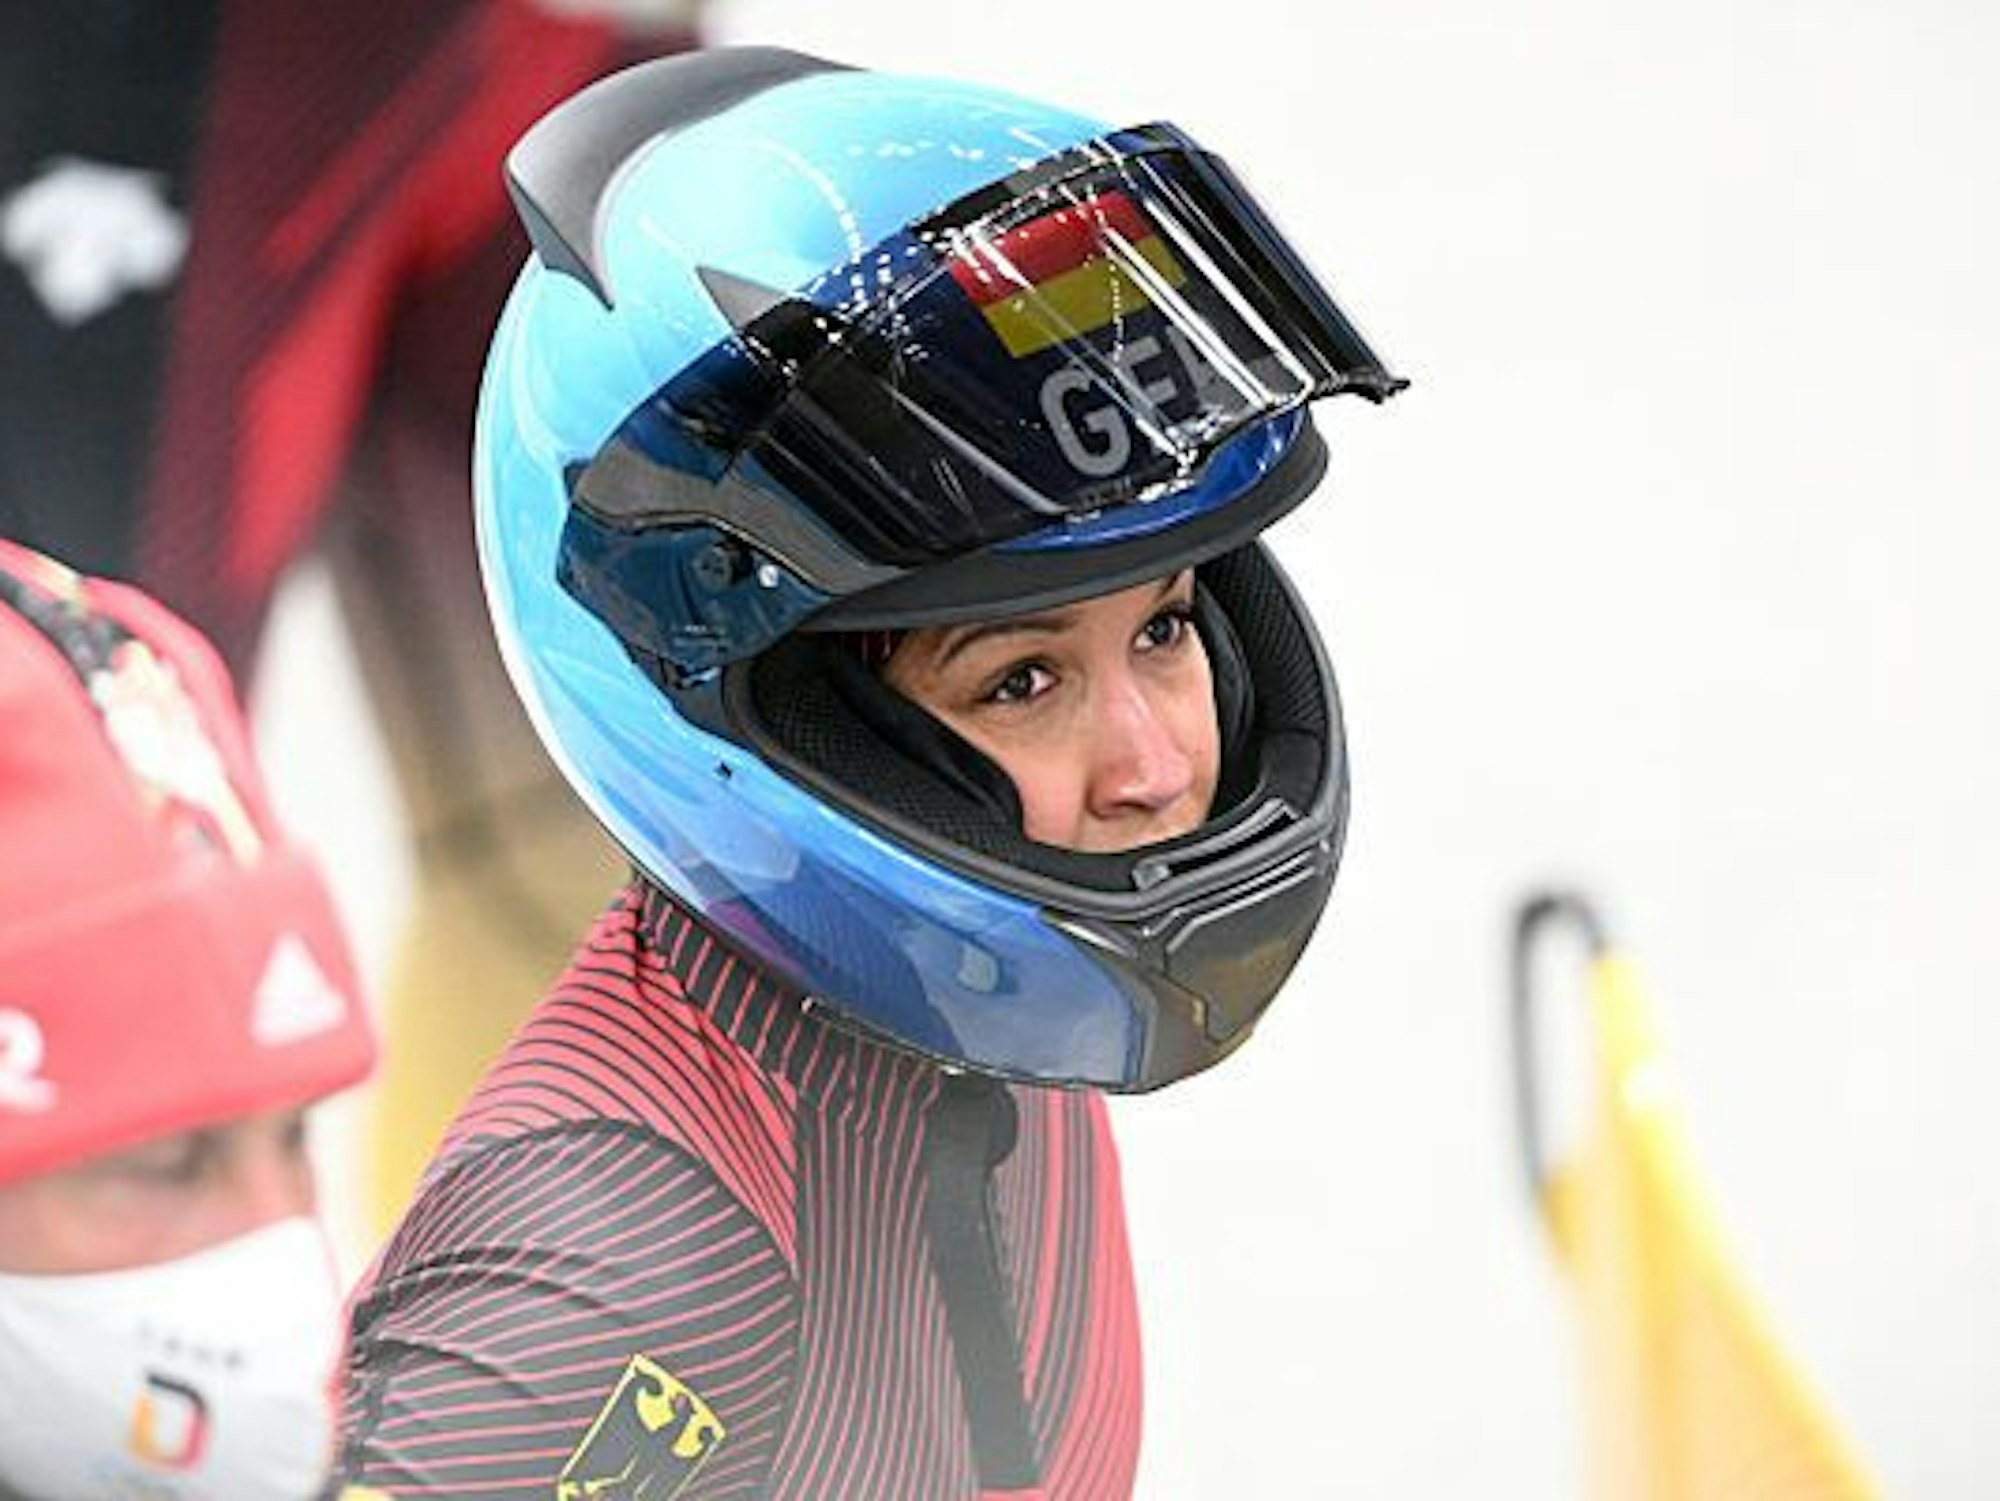 Eine Bobfahrerin im Deutschland-Teamkleidung bereitet sich auf die nächste Runde vor. Es ist nur ein Teil ihres Gesichts durch den Helm zu erkennen.